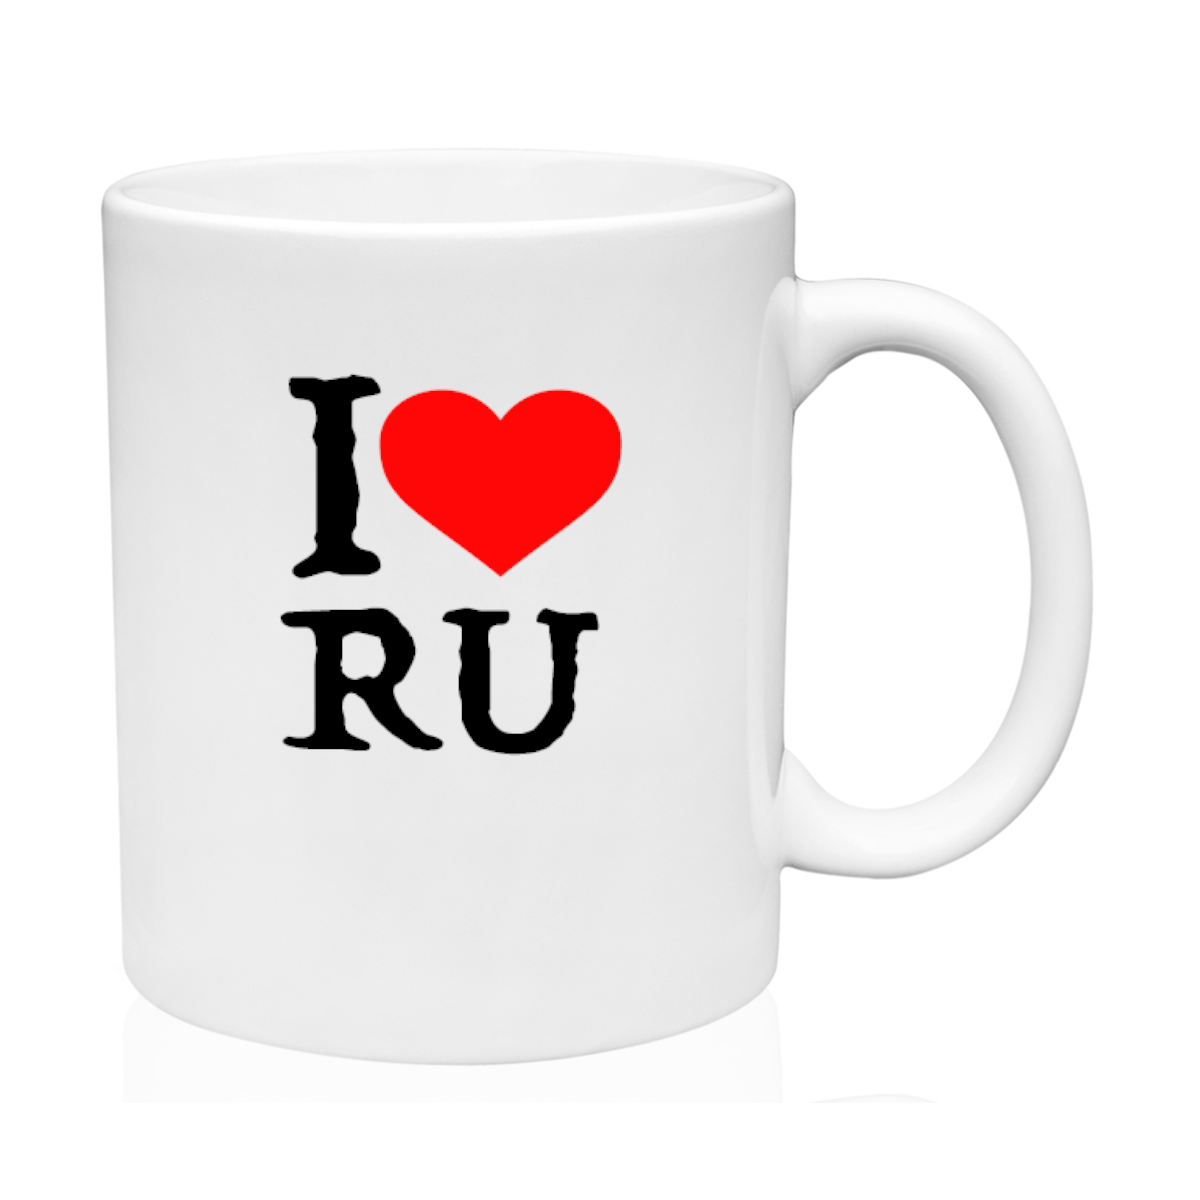 AGAD Turista (I Love Russia Ceramic Mug)